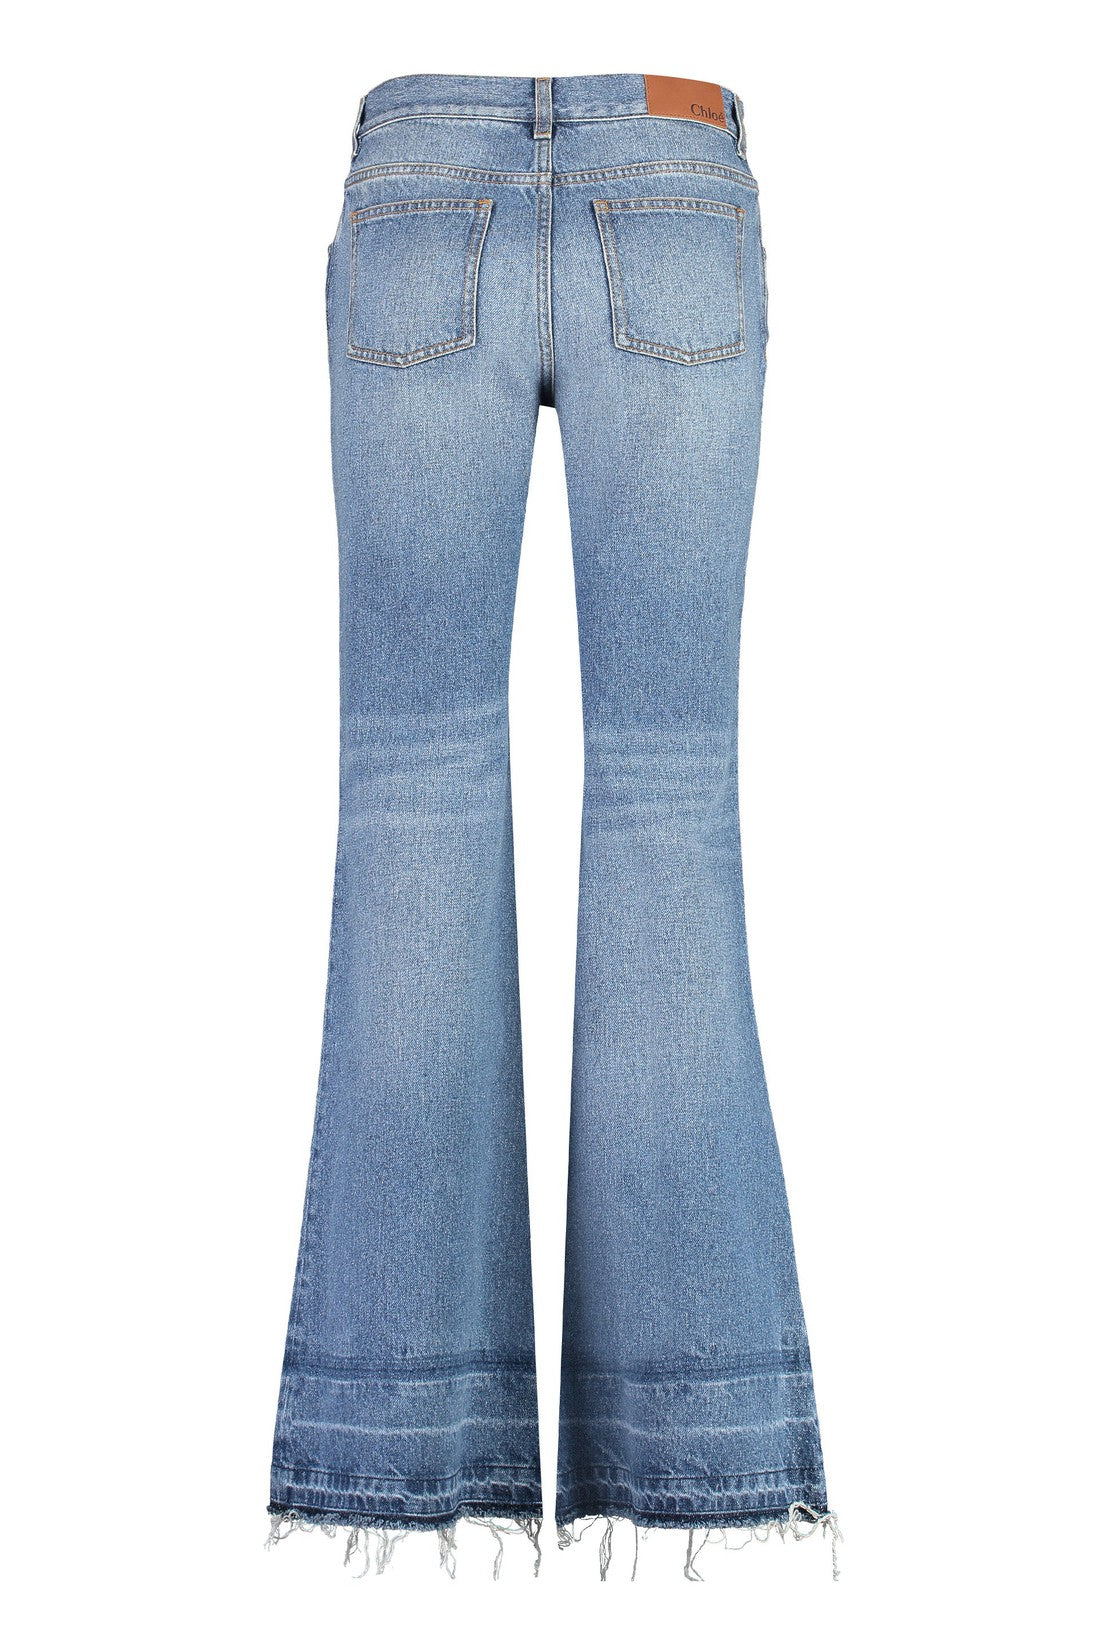 Chloé-OUTLET-SALE-Low-rise flared jeans-ARCHIVIST